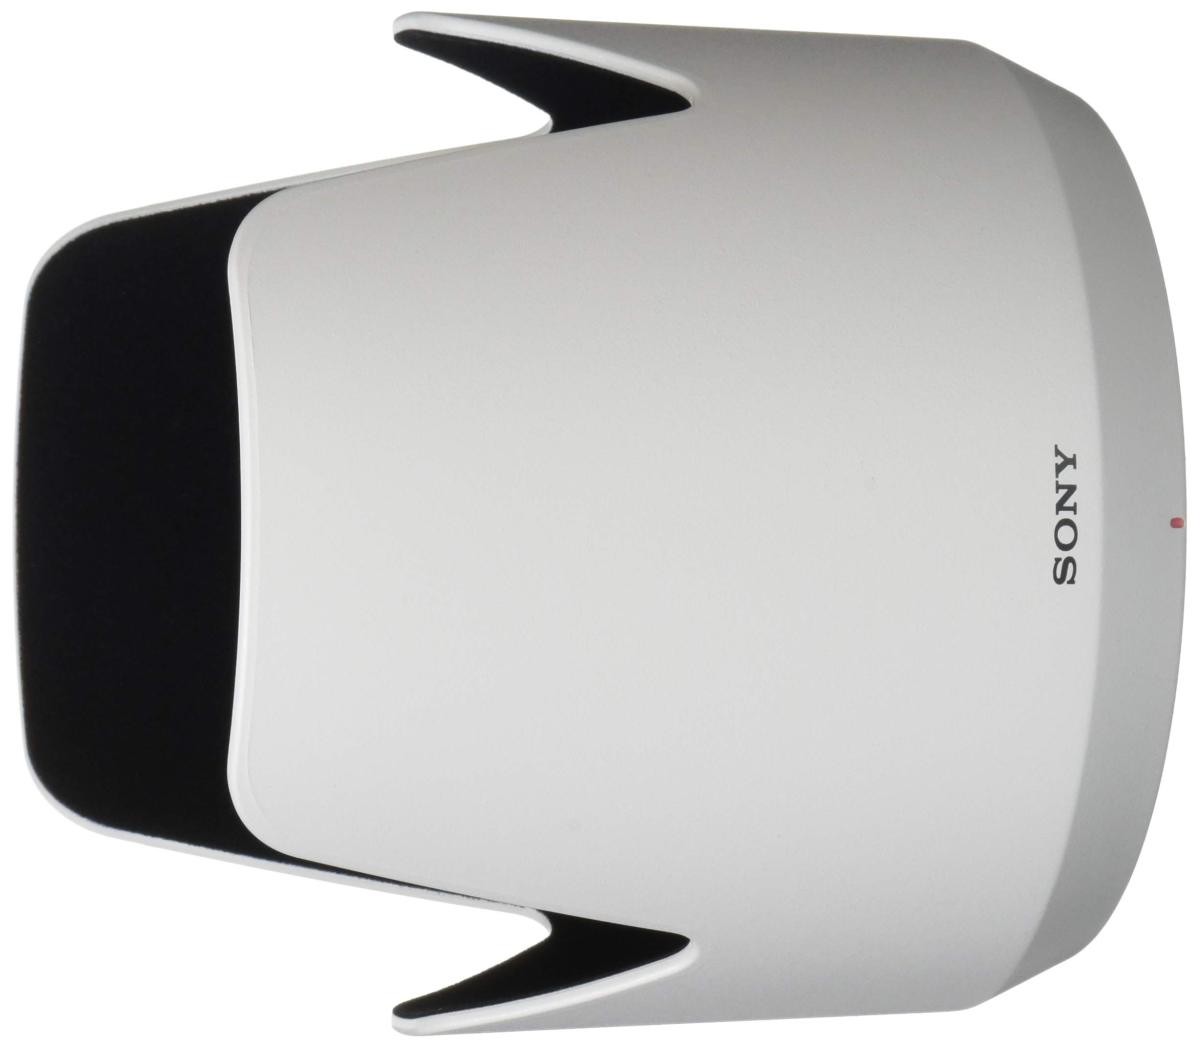 ソニー レンズフード ALC-SH120 レンズフードの商品画像